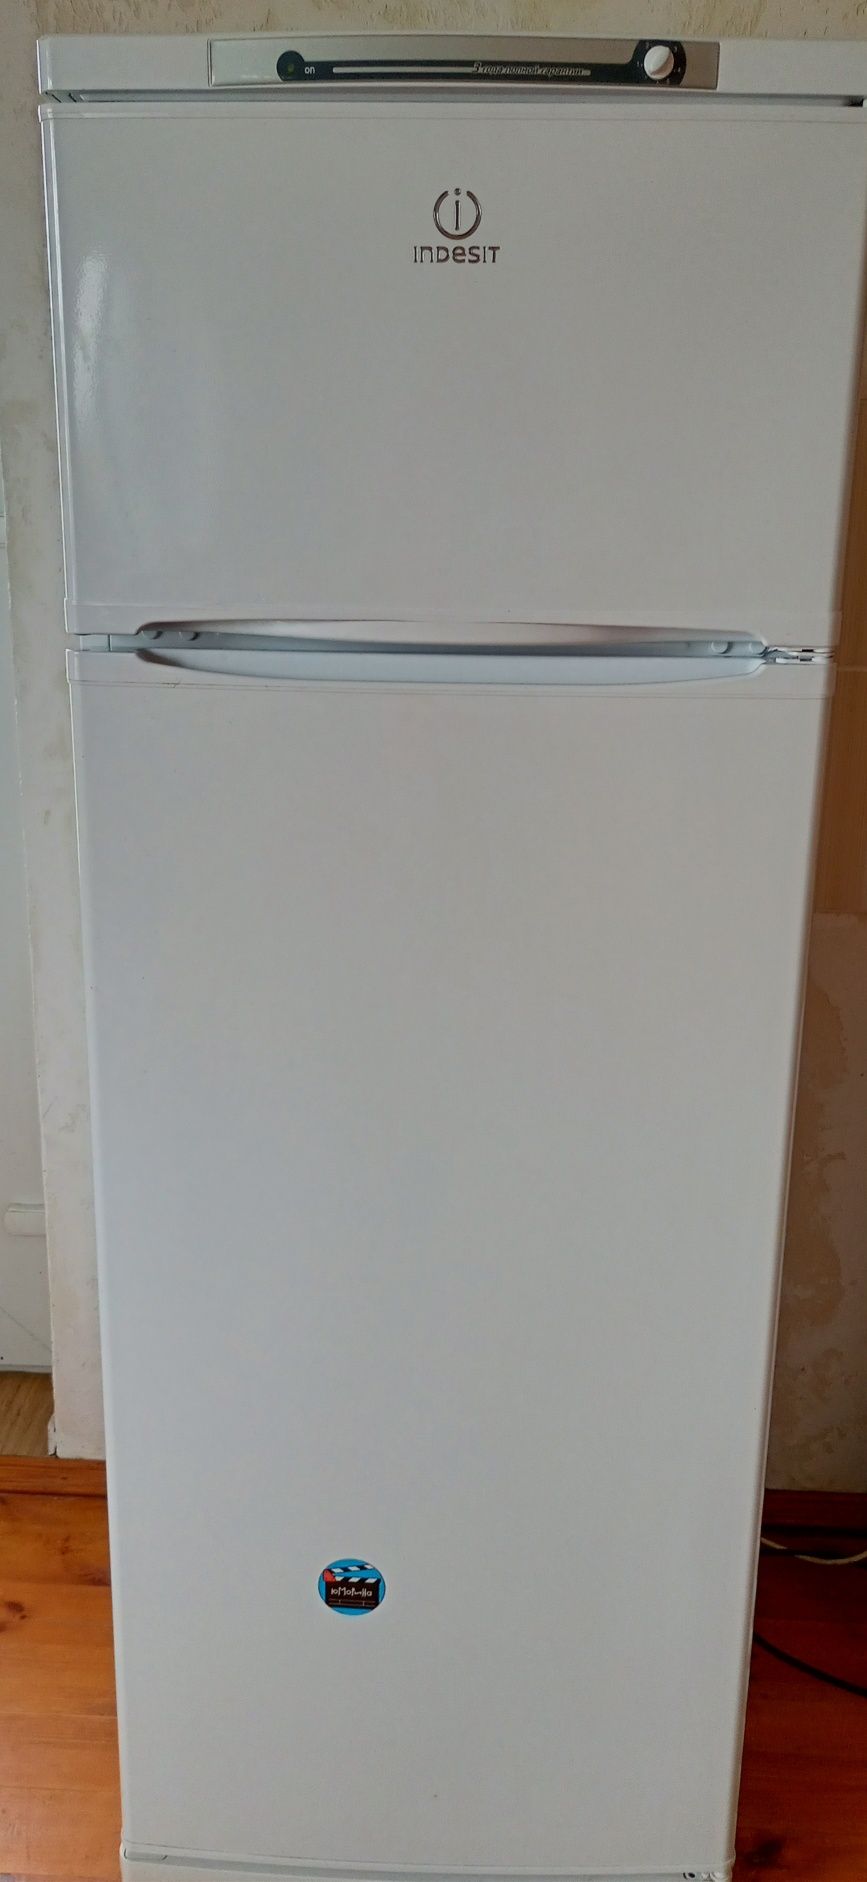 Новый холодильник